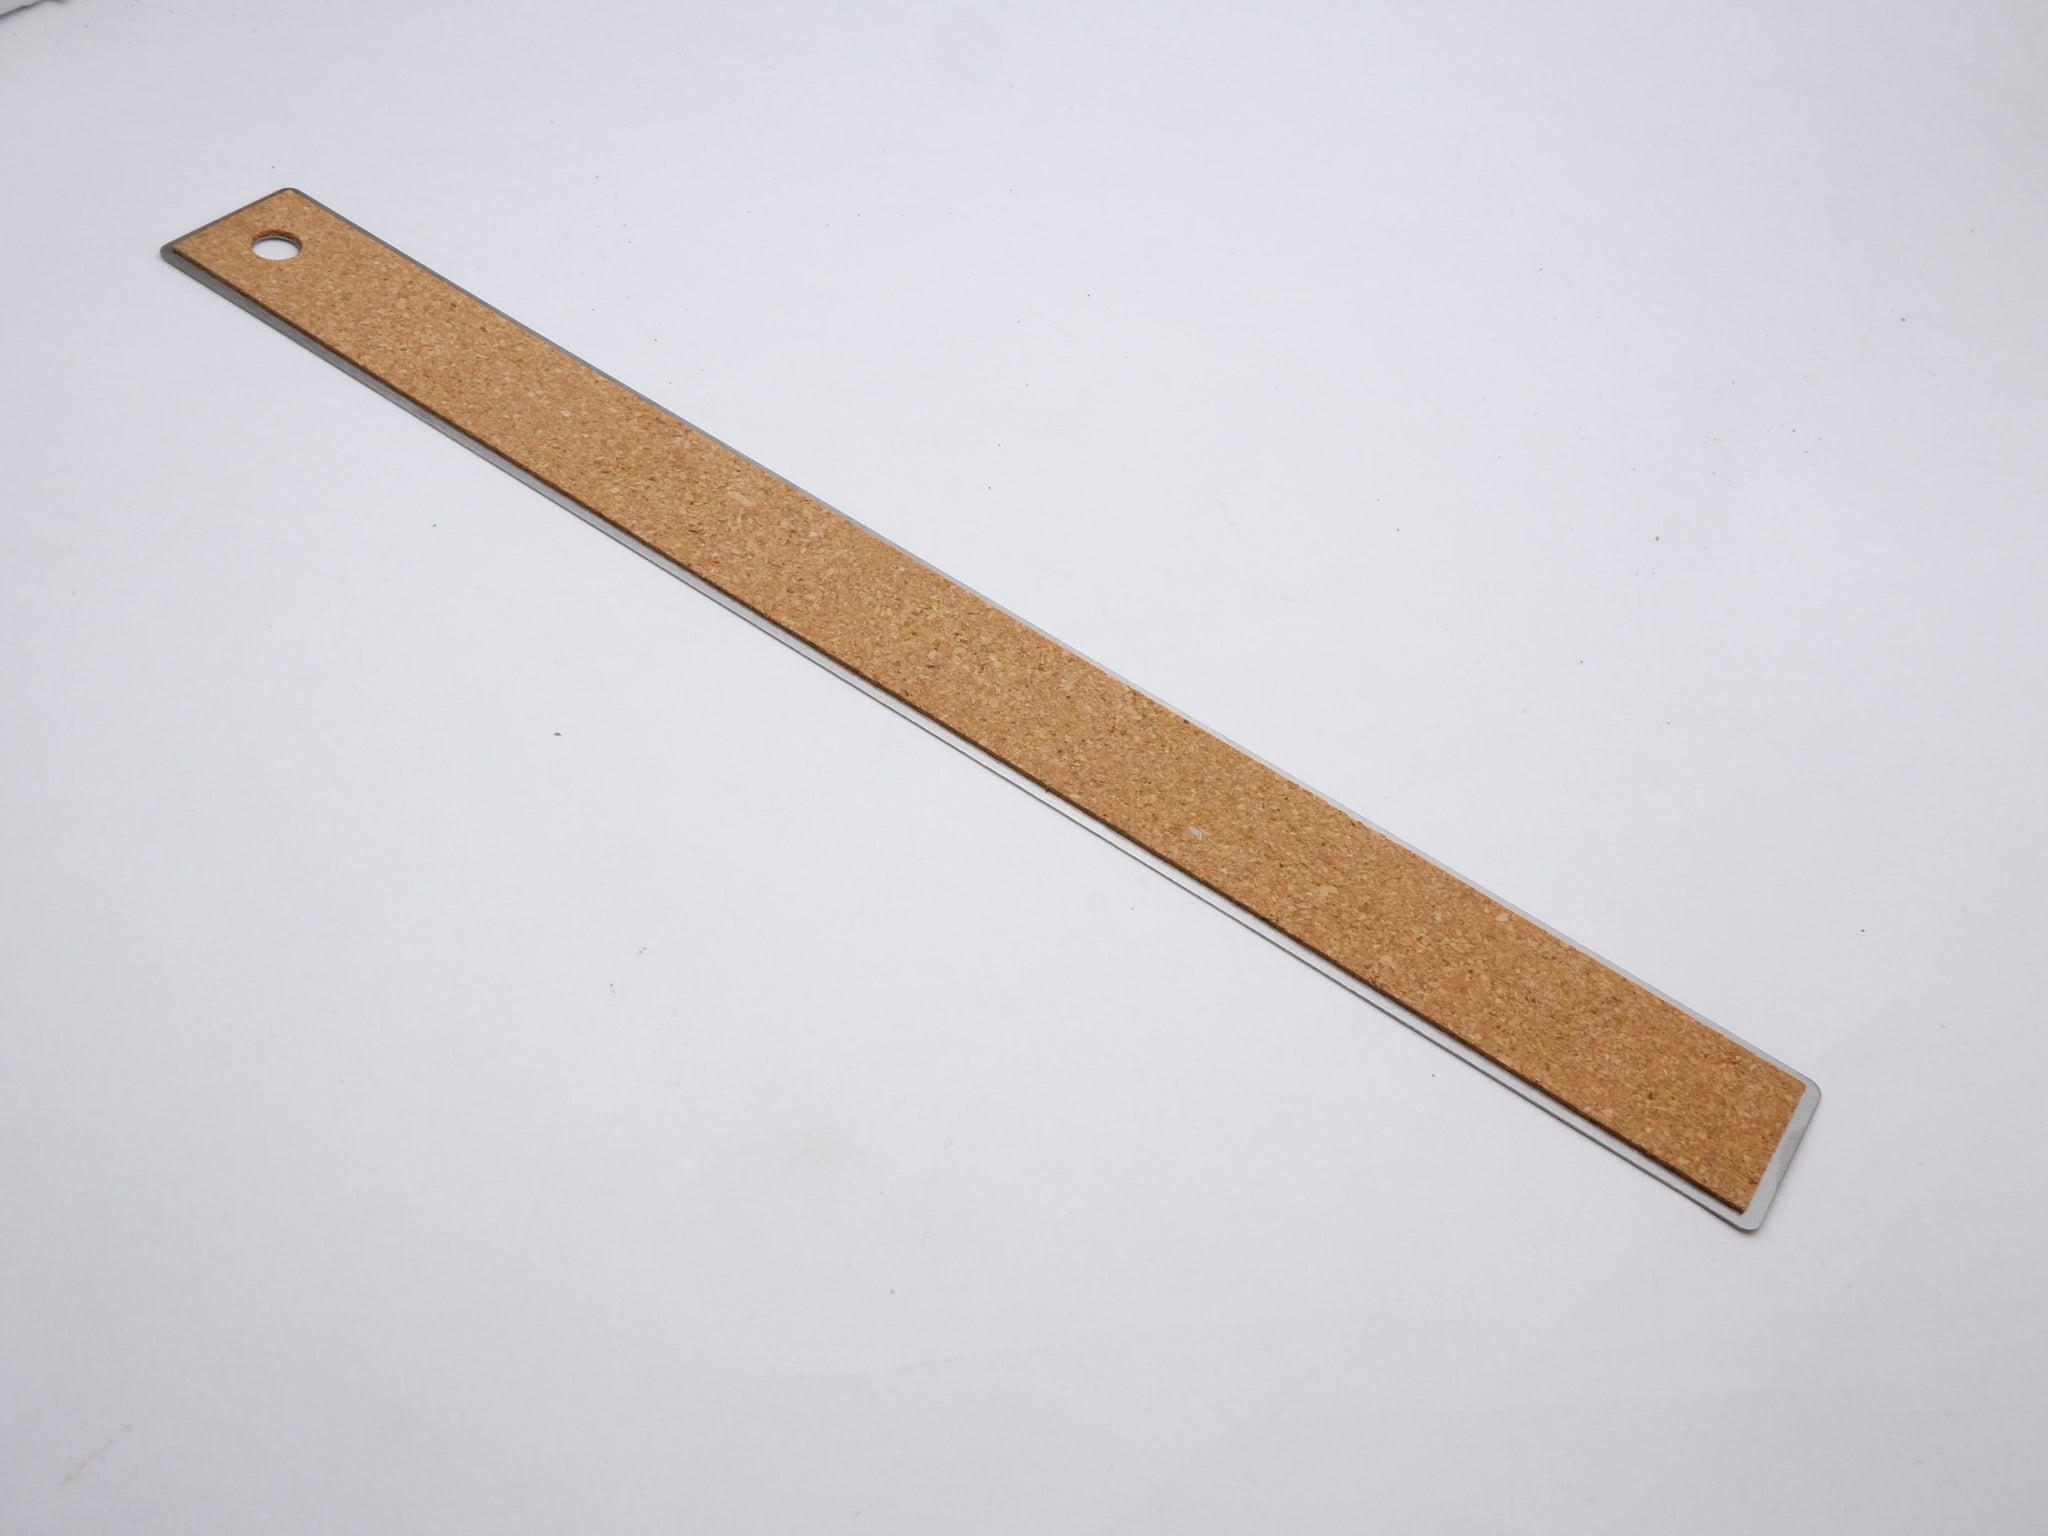 Stainless Steel Flexible Ruler with Non Slip Cork Base - 30cm